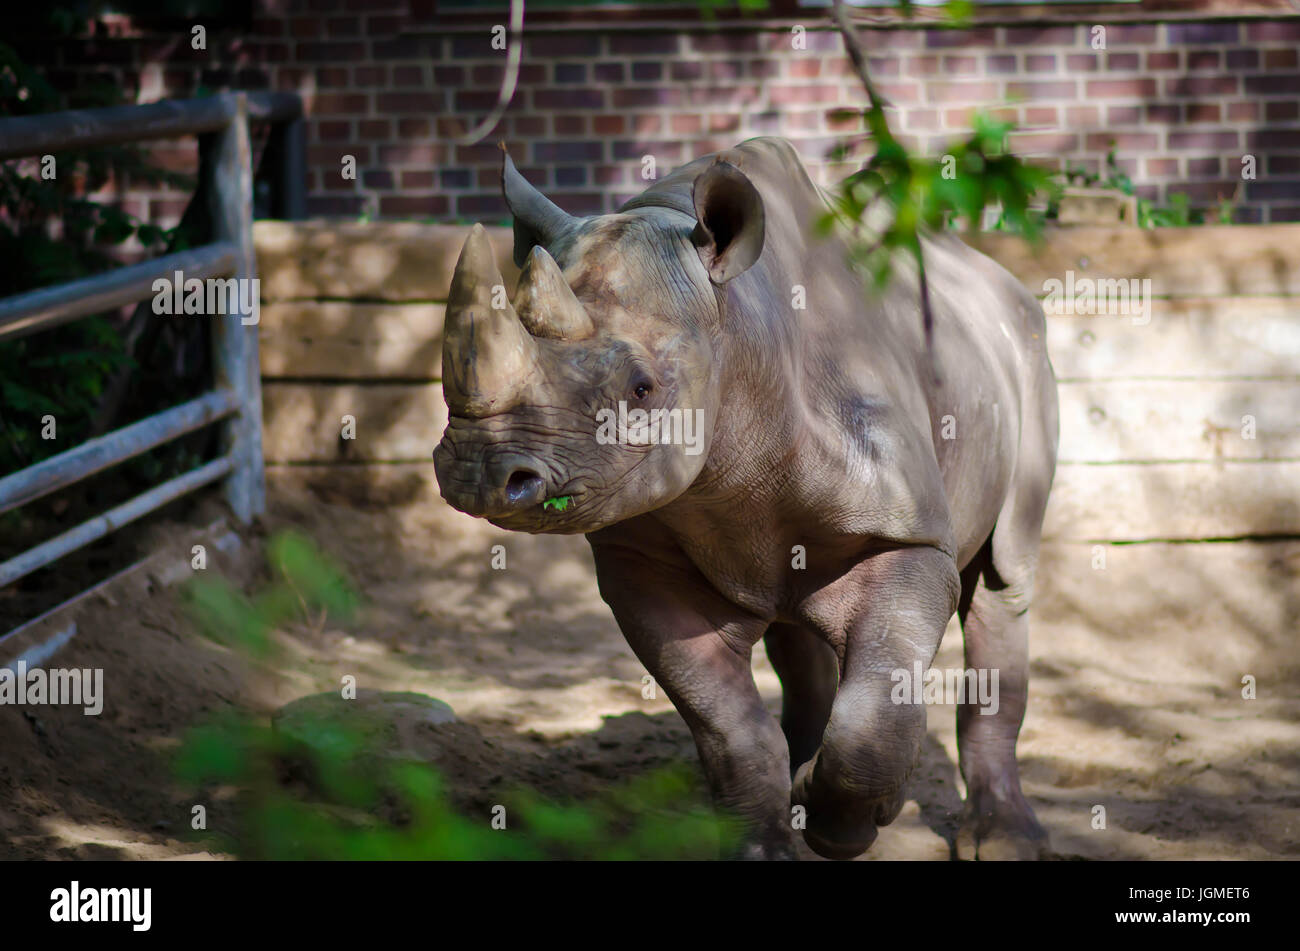 Rhinoceros in Sacramento Zoo Stock Photo - Alamy